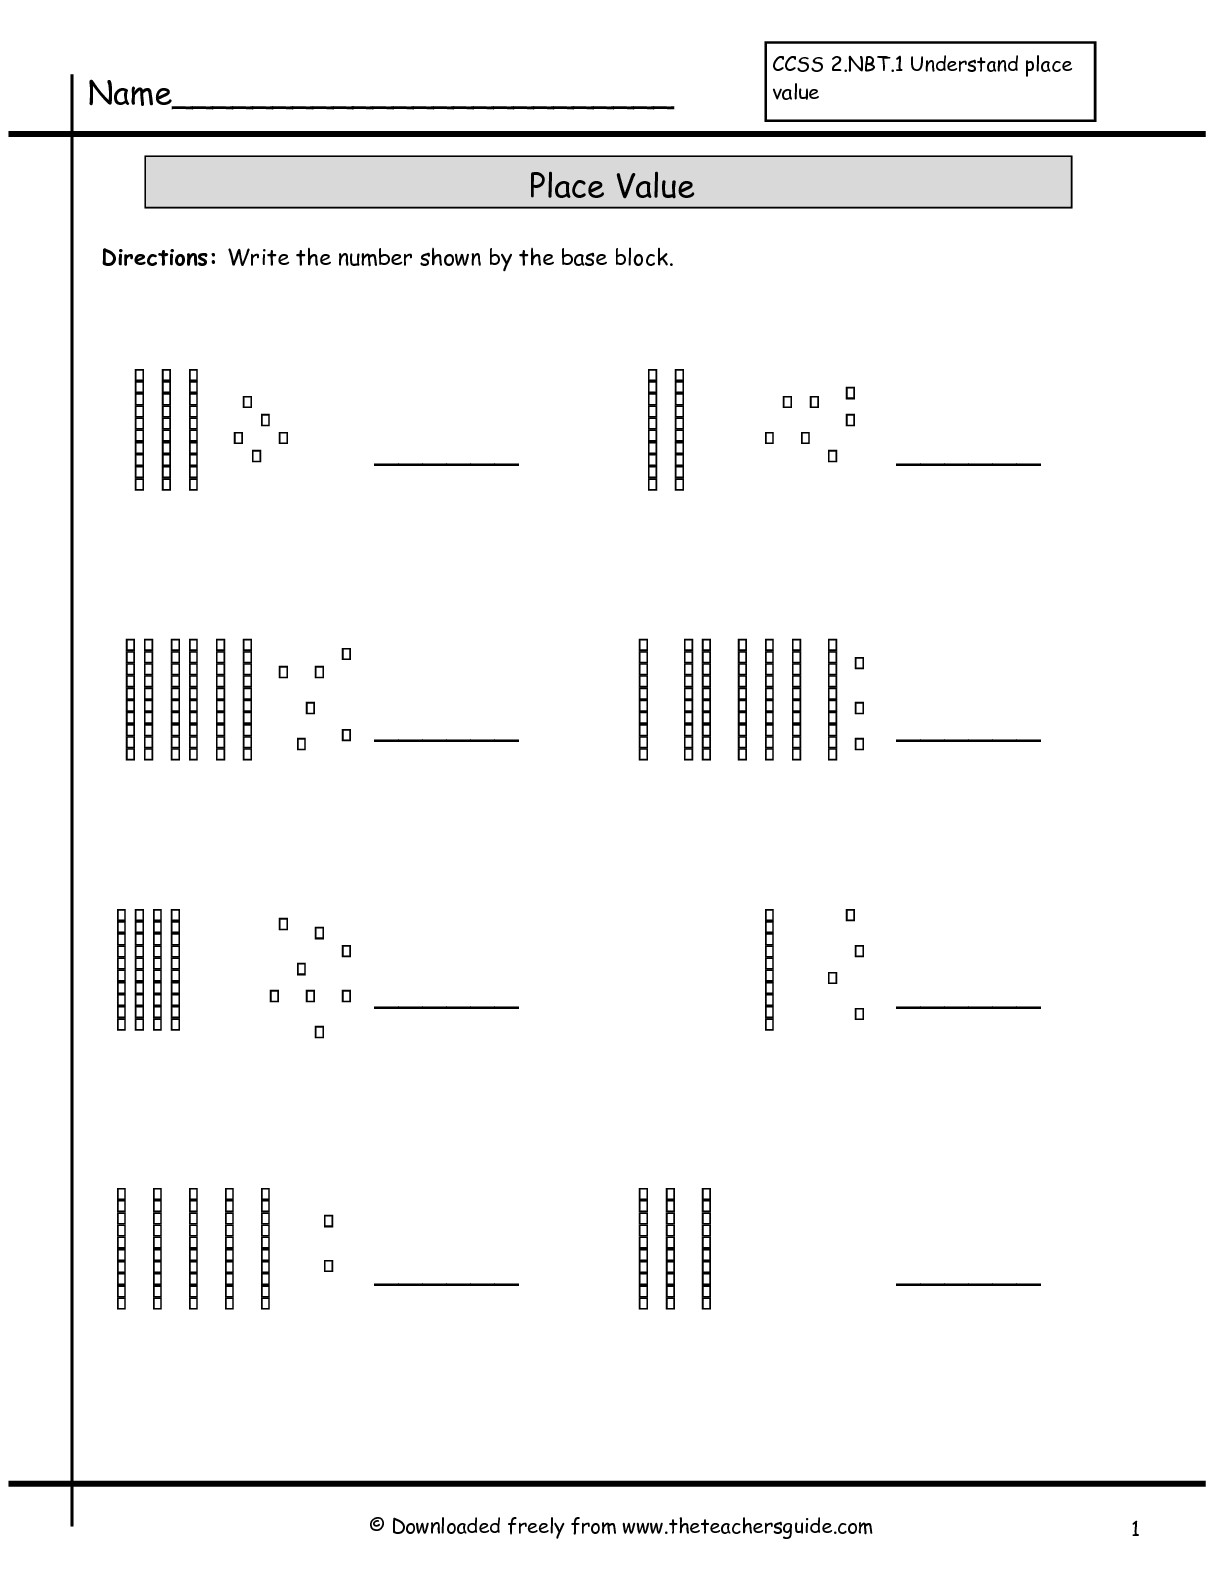 Place Value Base Ten Blocks Worksheets Image